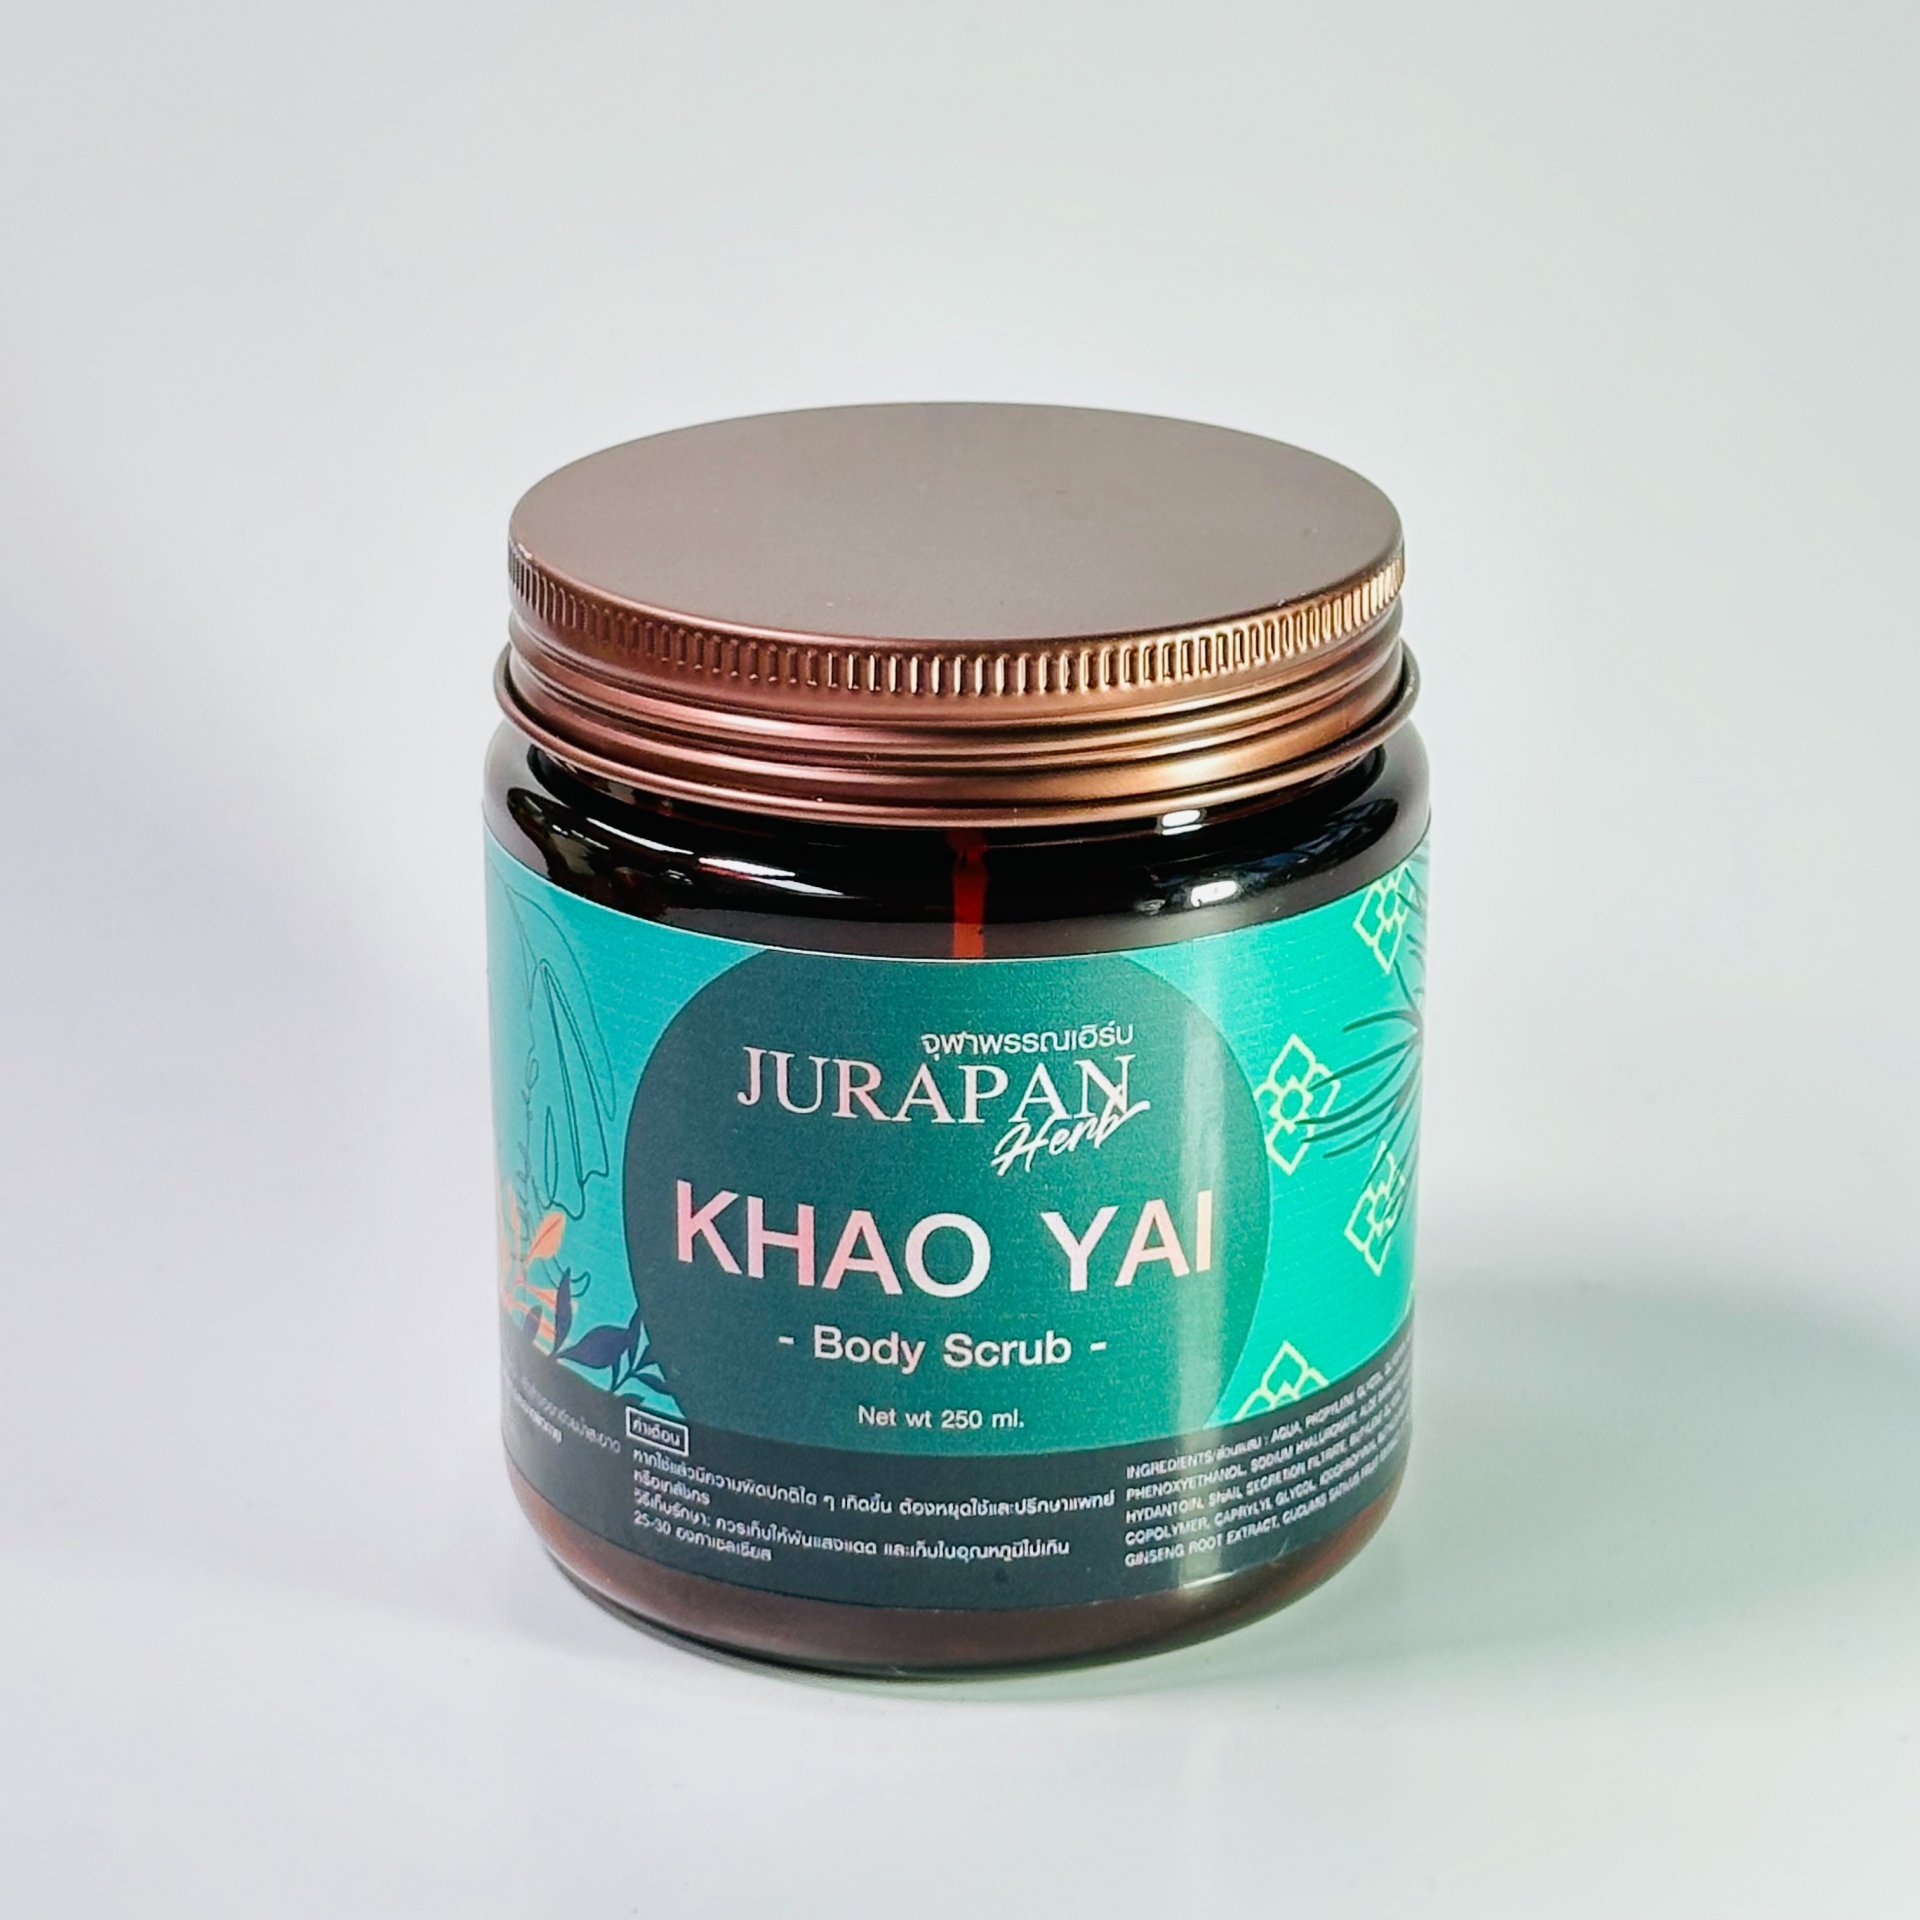 Jurapan Herb Khao Yai Wood Bath & Body Scrub